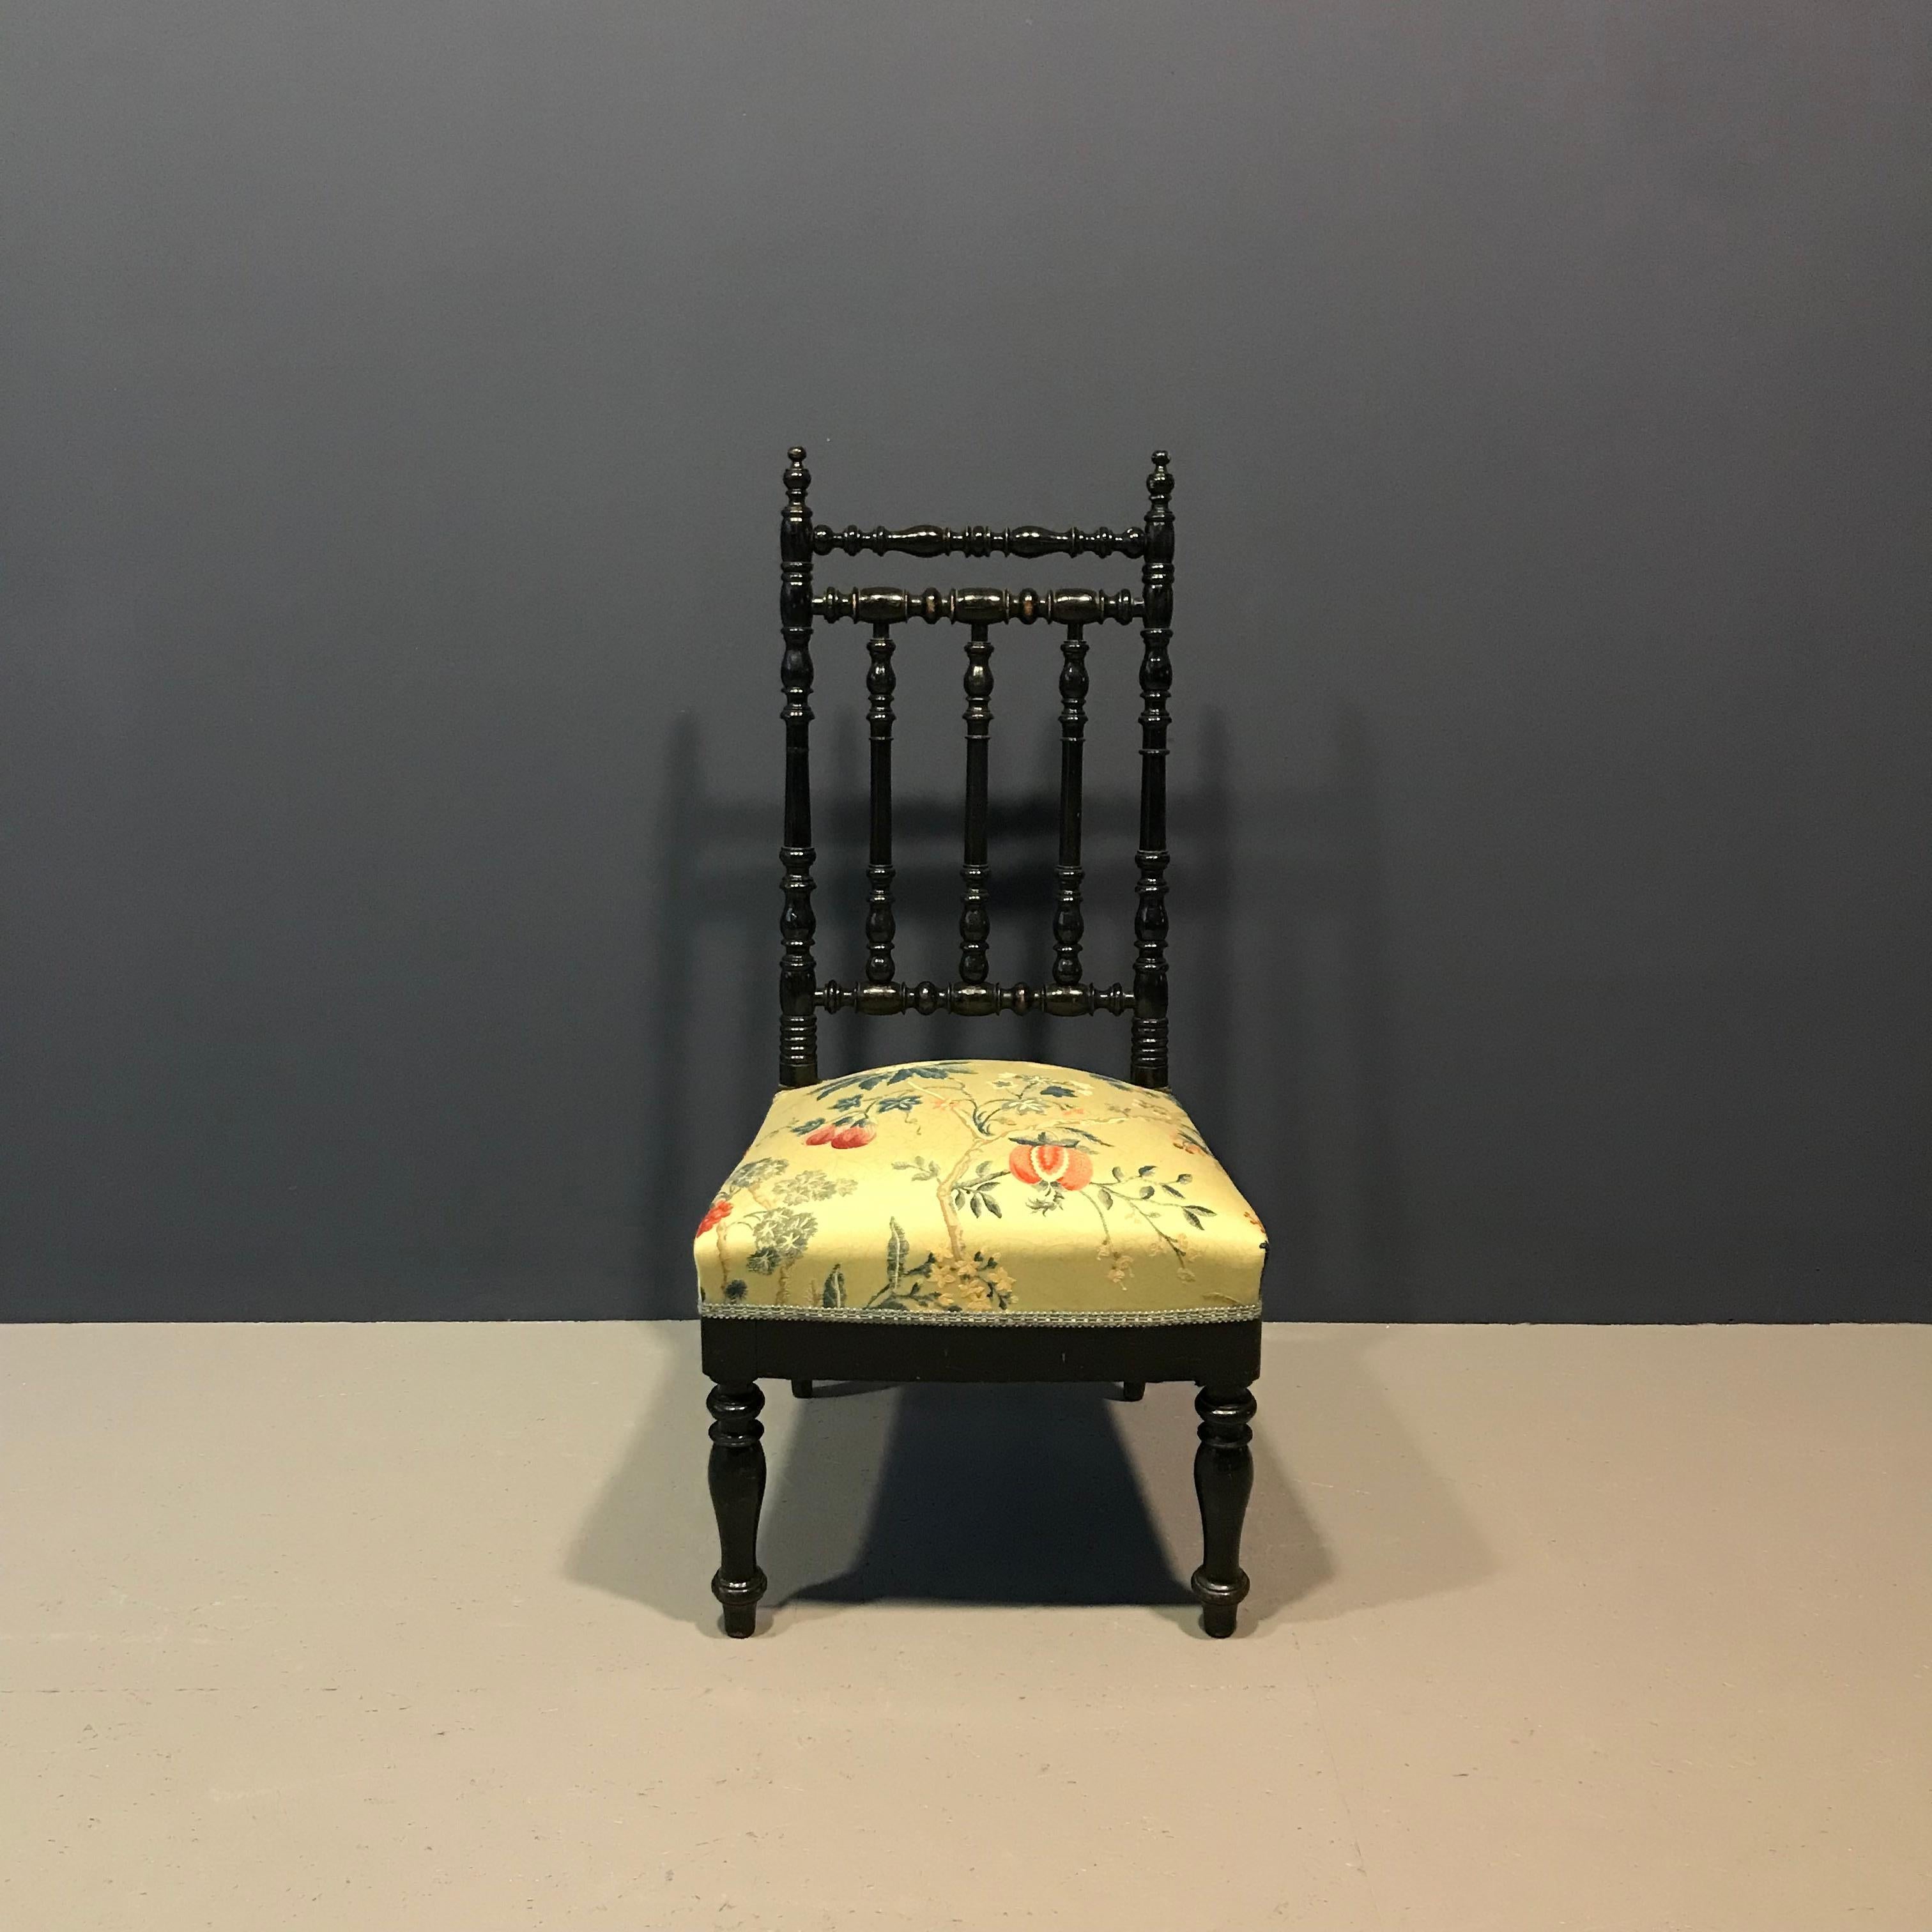 Chaise de salon européenne des années 1950 remise à neuf et ornée d'un motif floral de la firme Nobilis. Cette chaise s'adapte à un large éventail d'environnements.